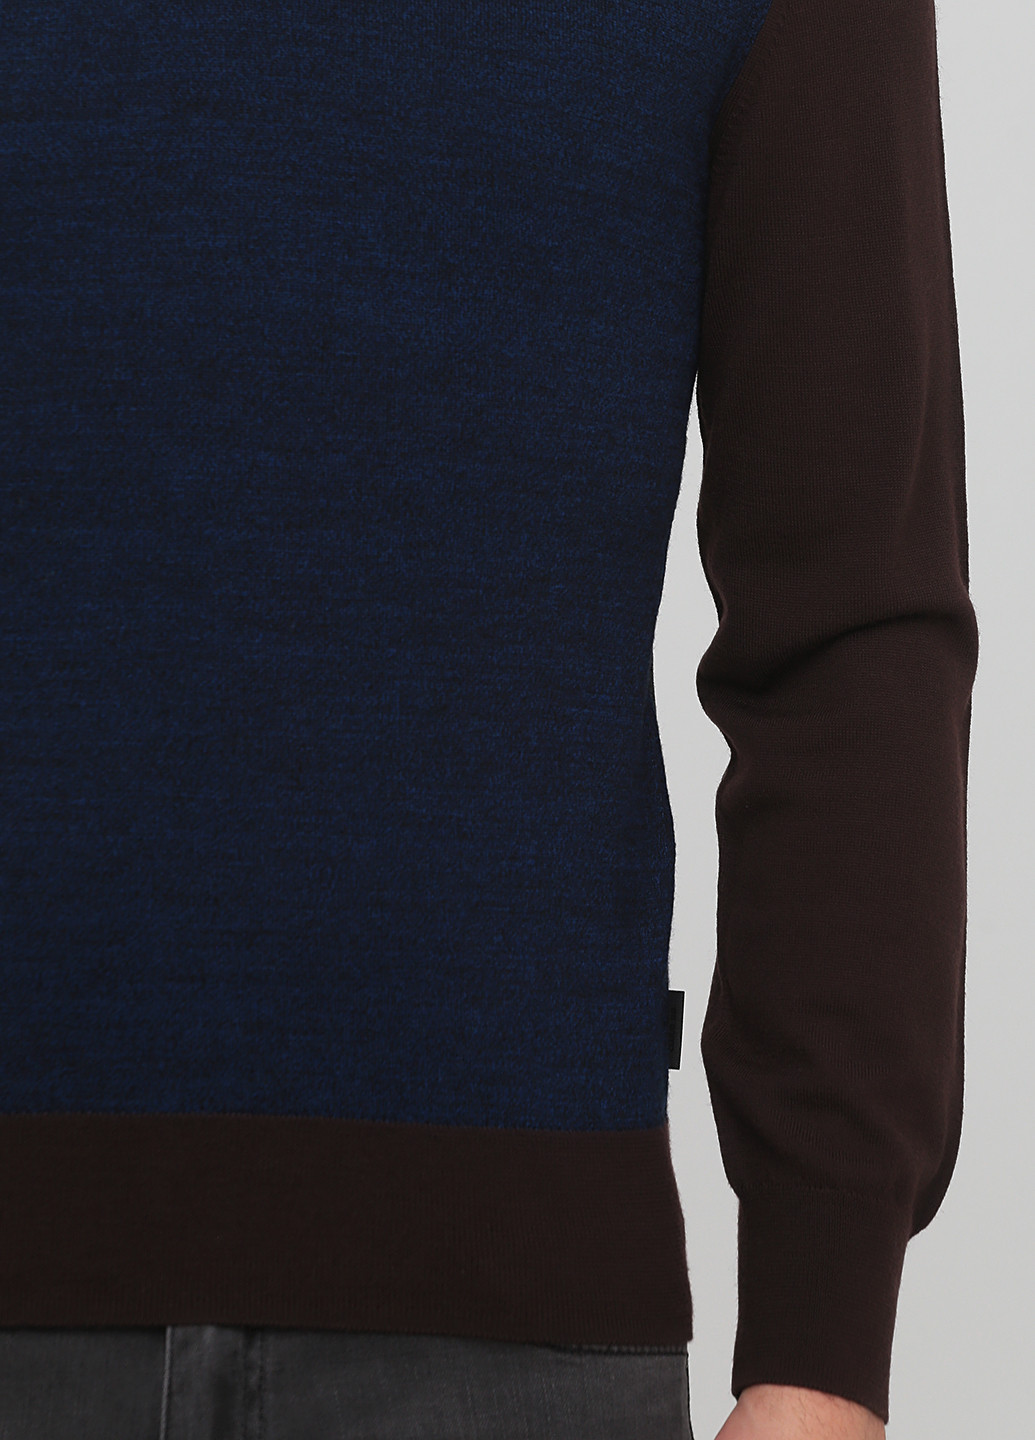 Темно-синий демисезонный пуловер пуловер Cerruti